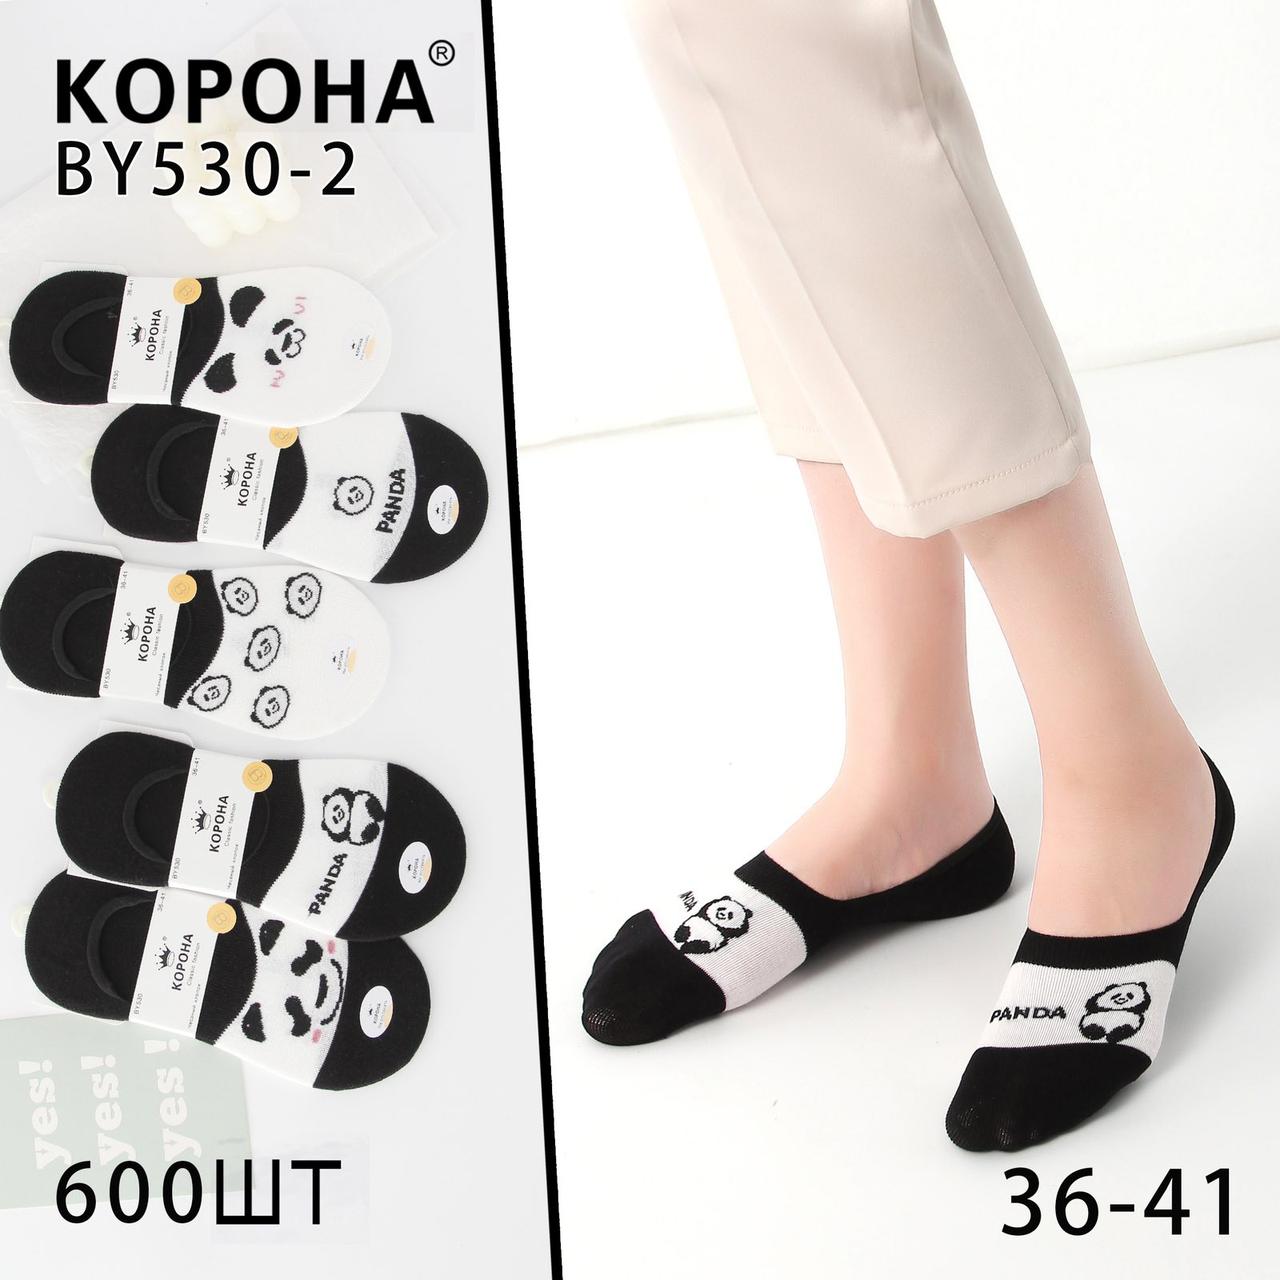 Жіночі шкарпетки - СЛІДИ. "Корона", 36-41 р-р. Шкарпетки вкорочені, шкарпетки під кросівки